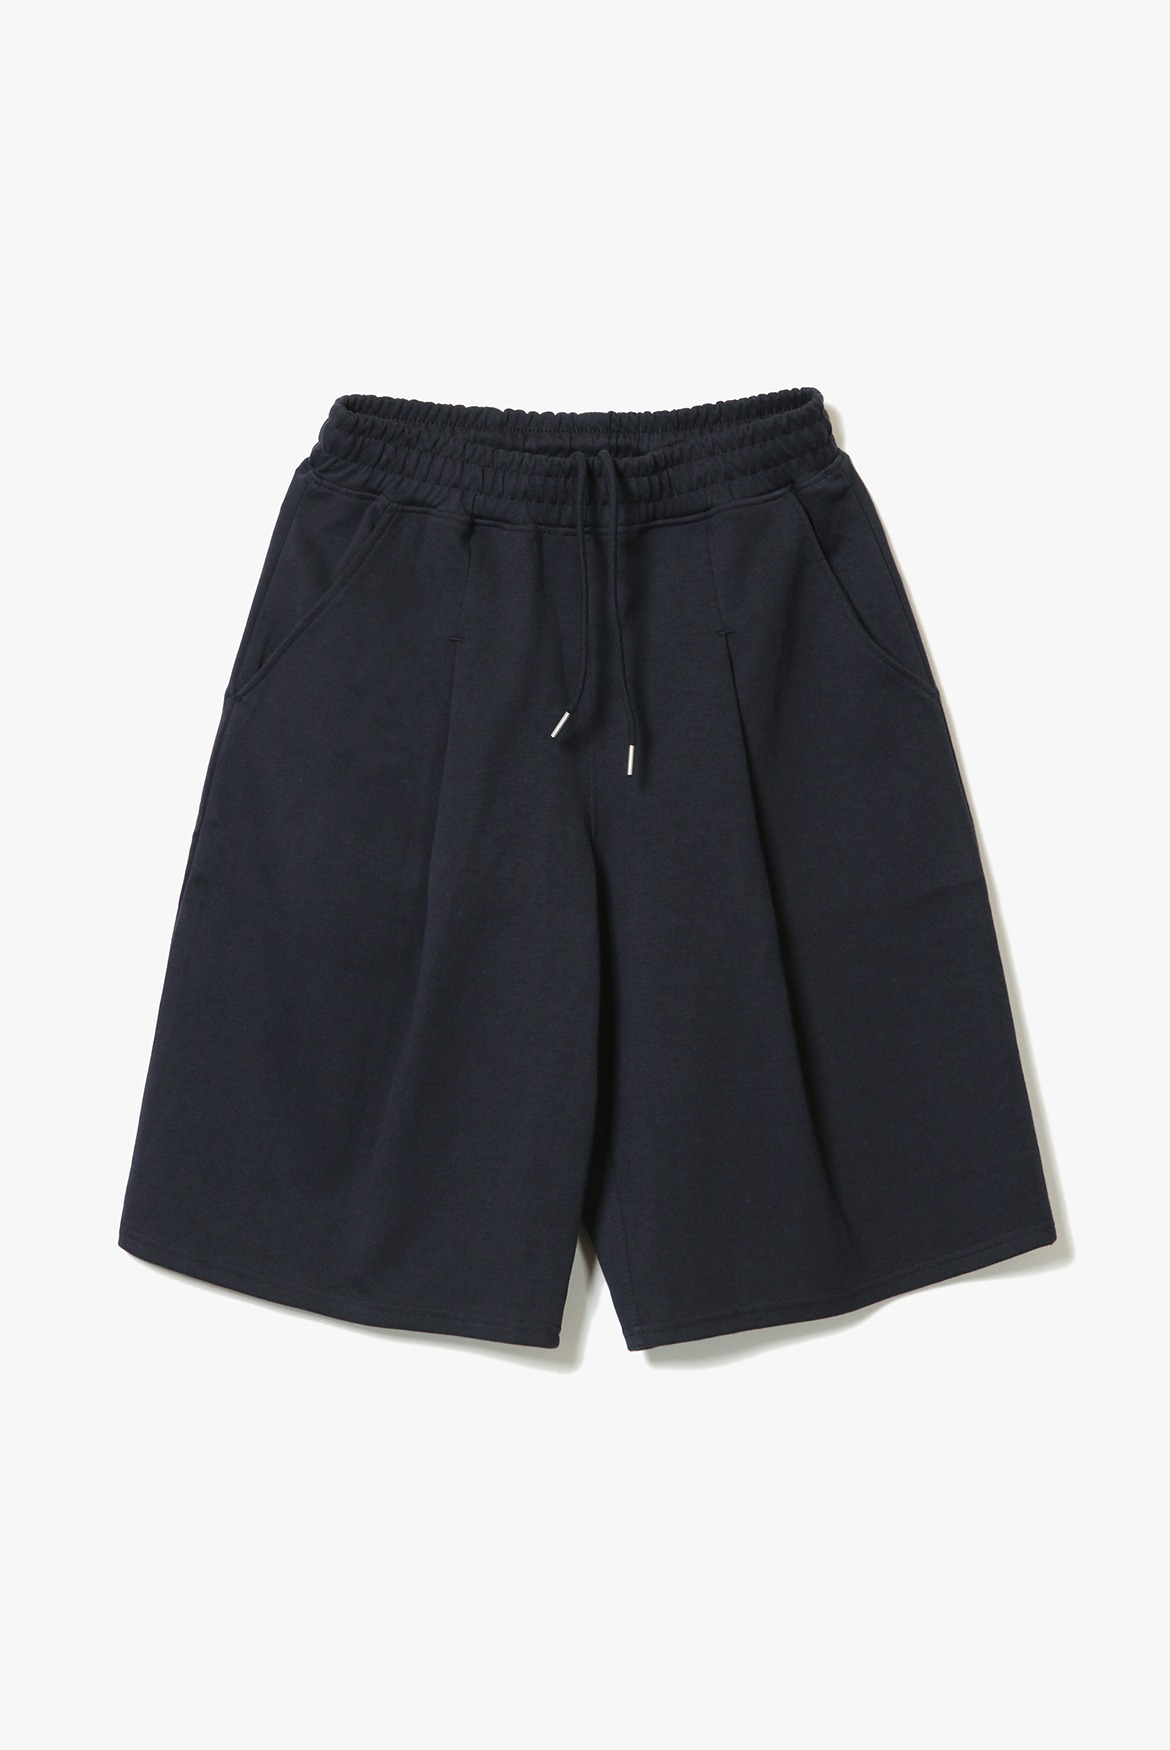 (7월 6일 예약배송) Deep One Tuck Sweat Shorts [Navy]